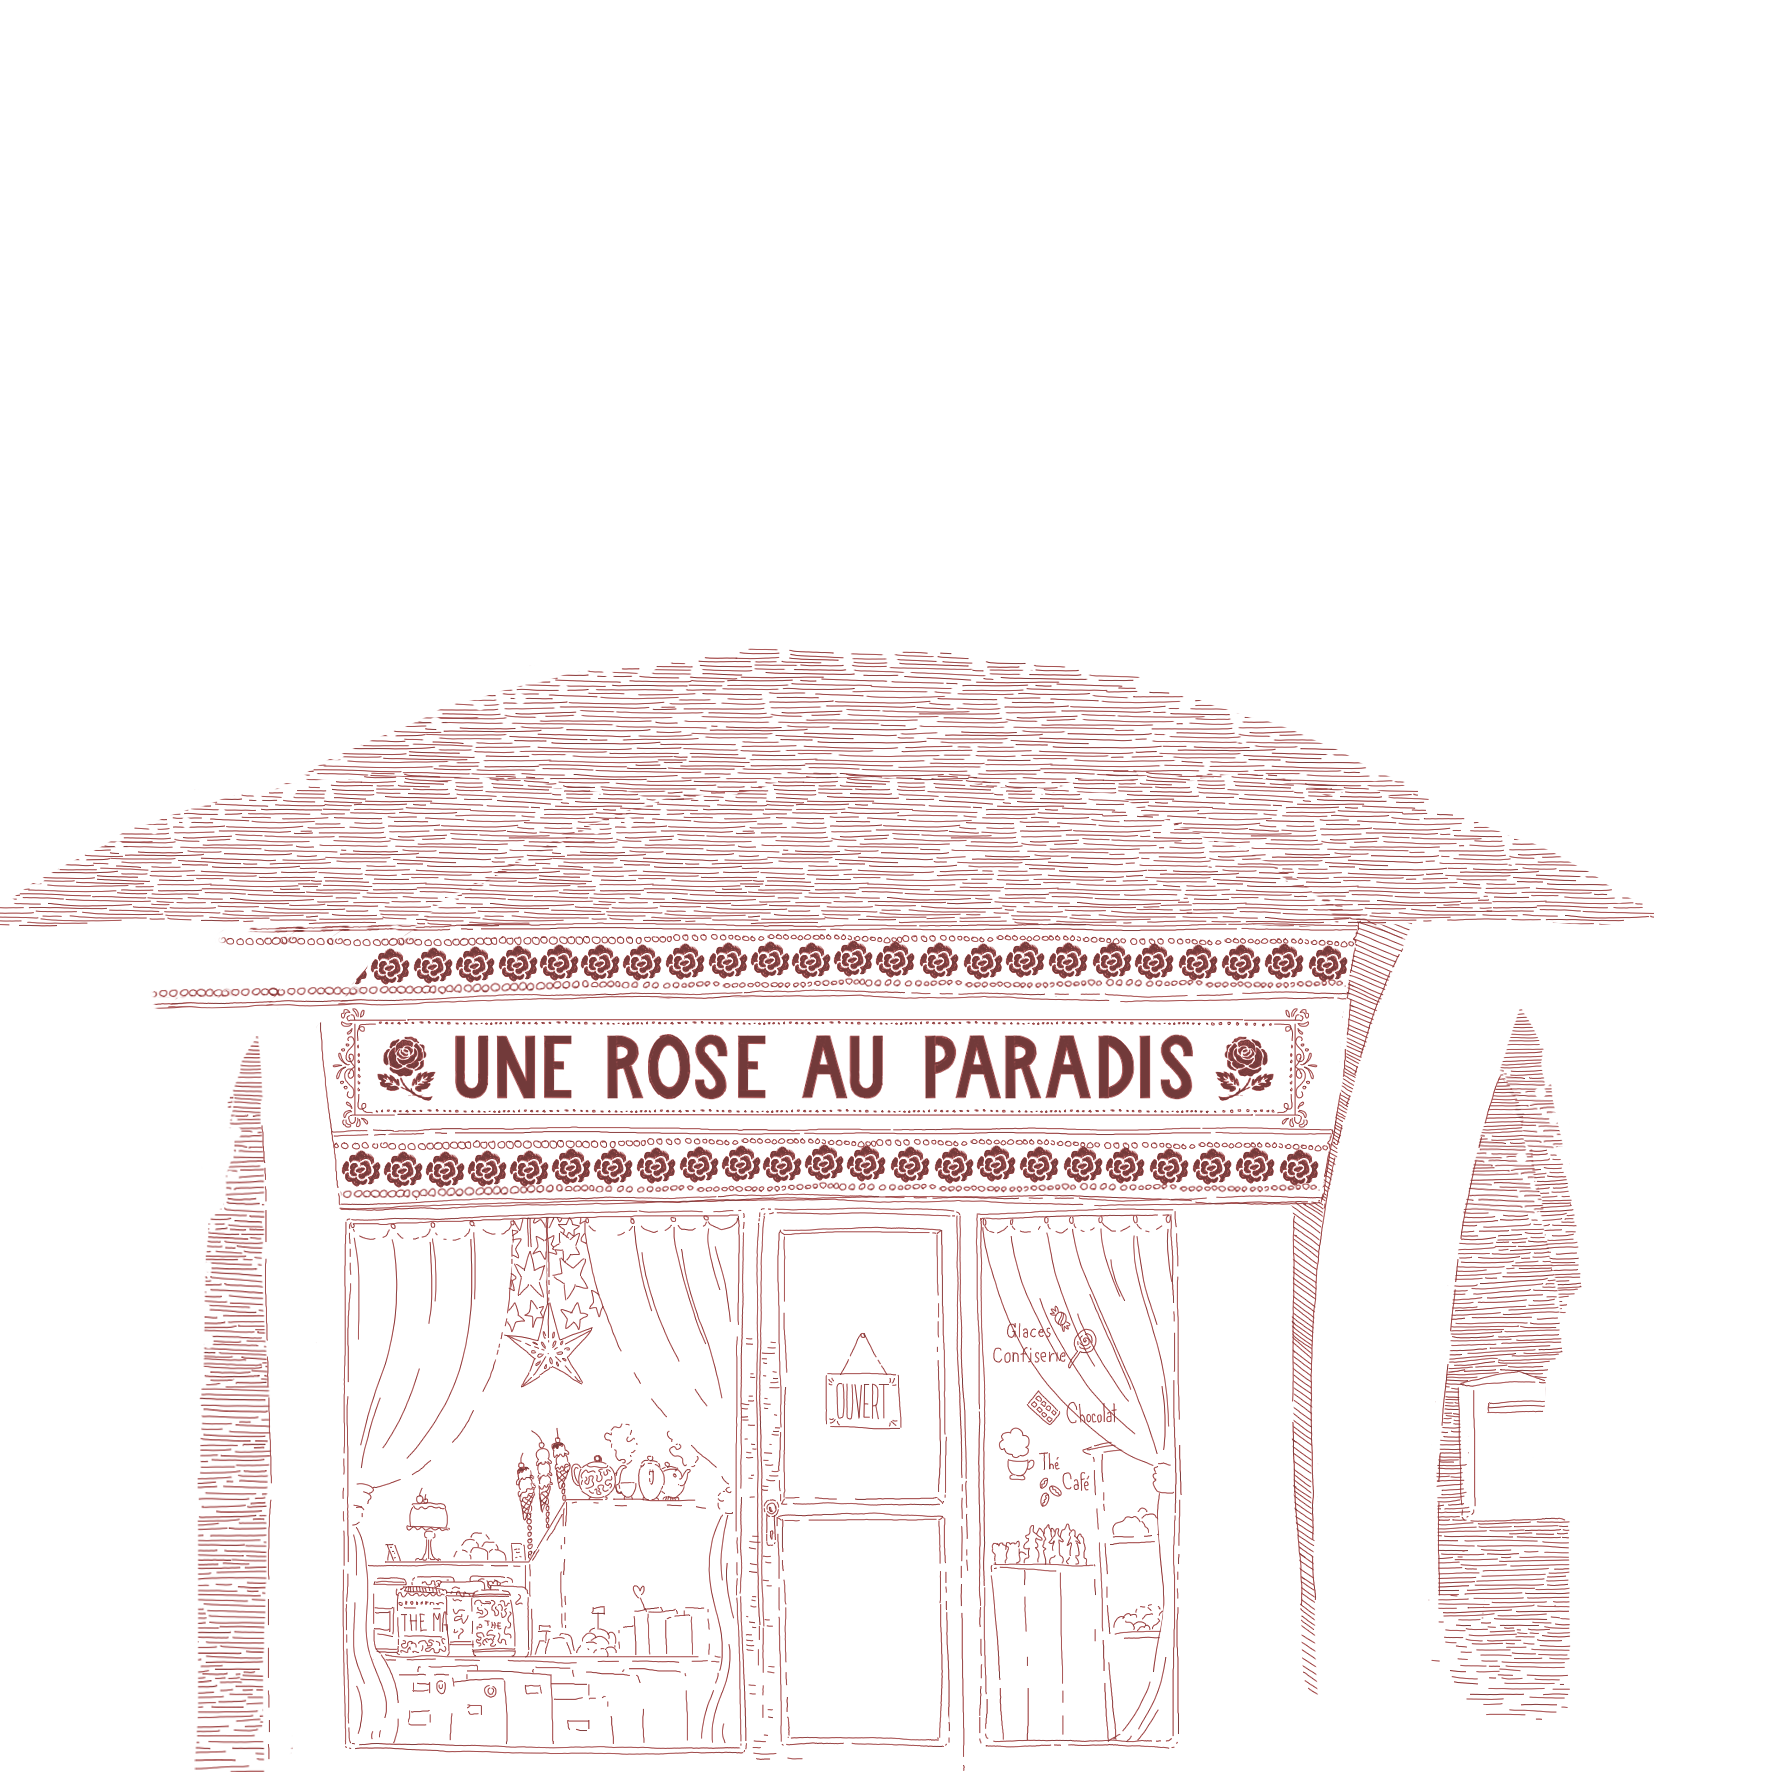 red illustration of the "une rose au paradis" café